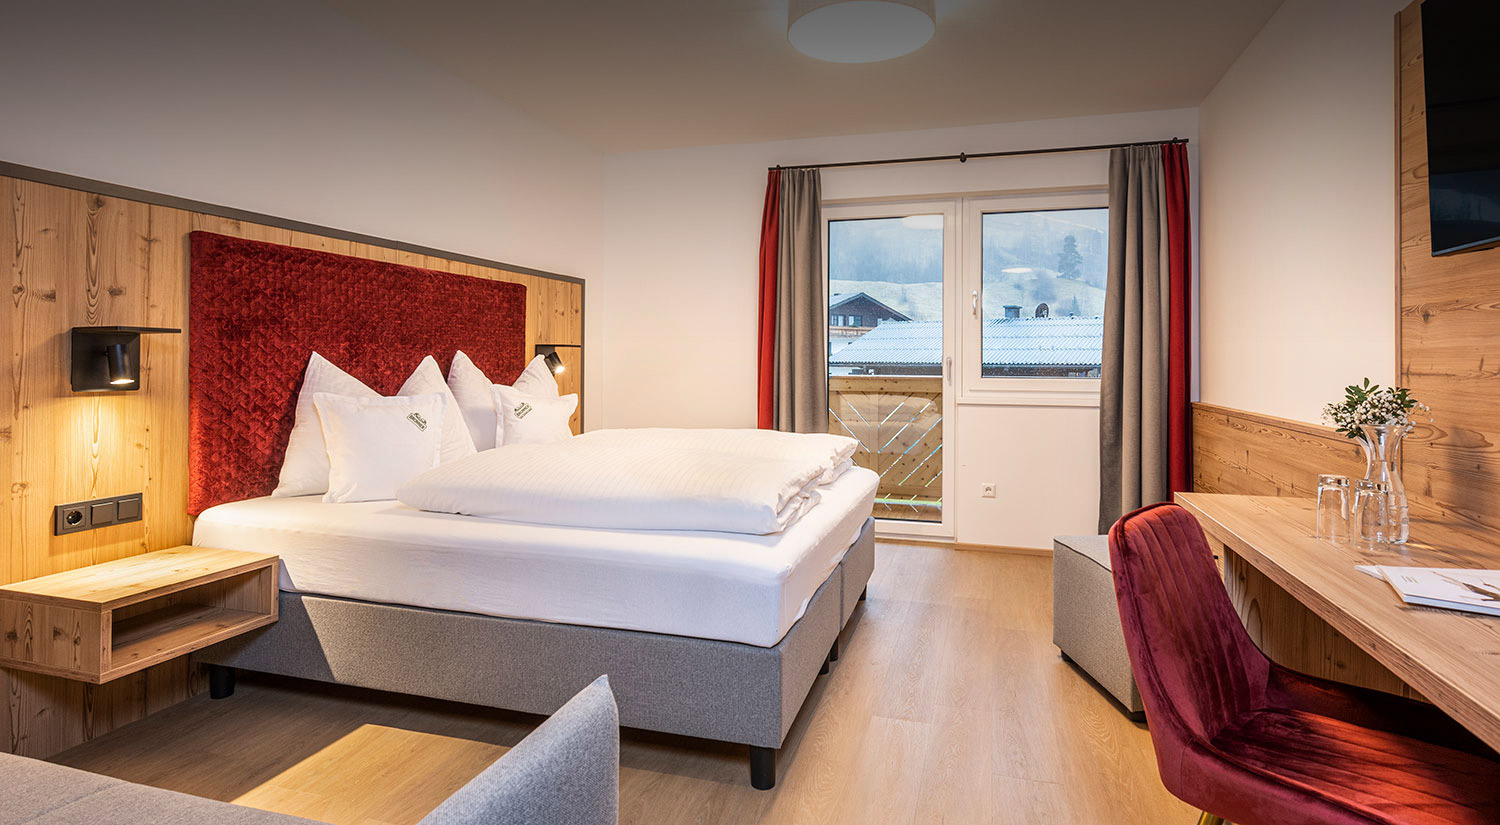 Wohnen in schönen Zimmern im Hotel Brunner in Gleiming an der Reiteralm